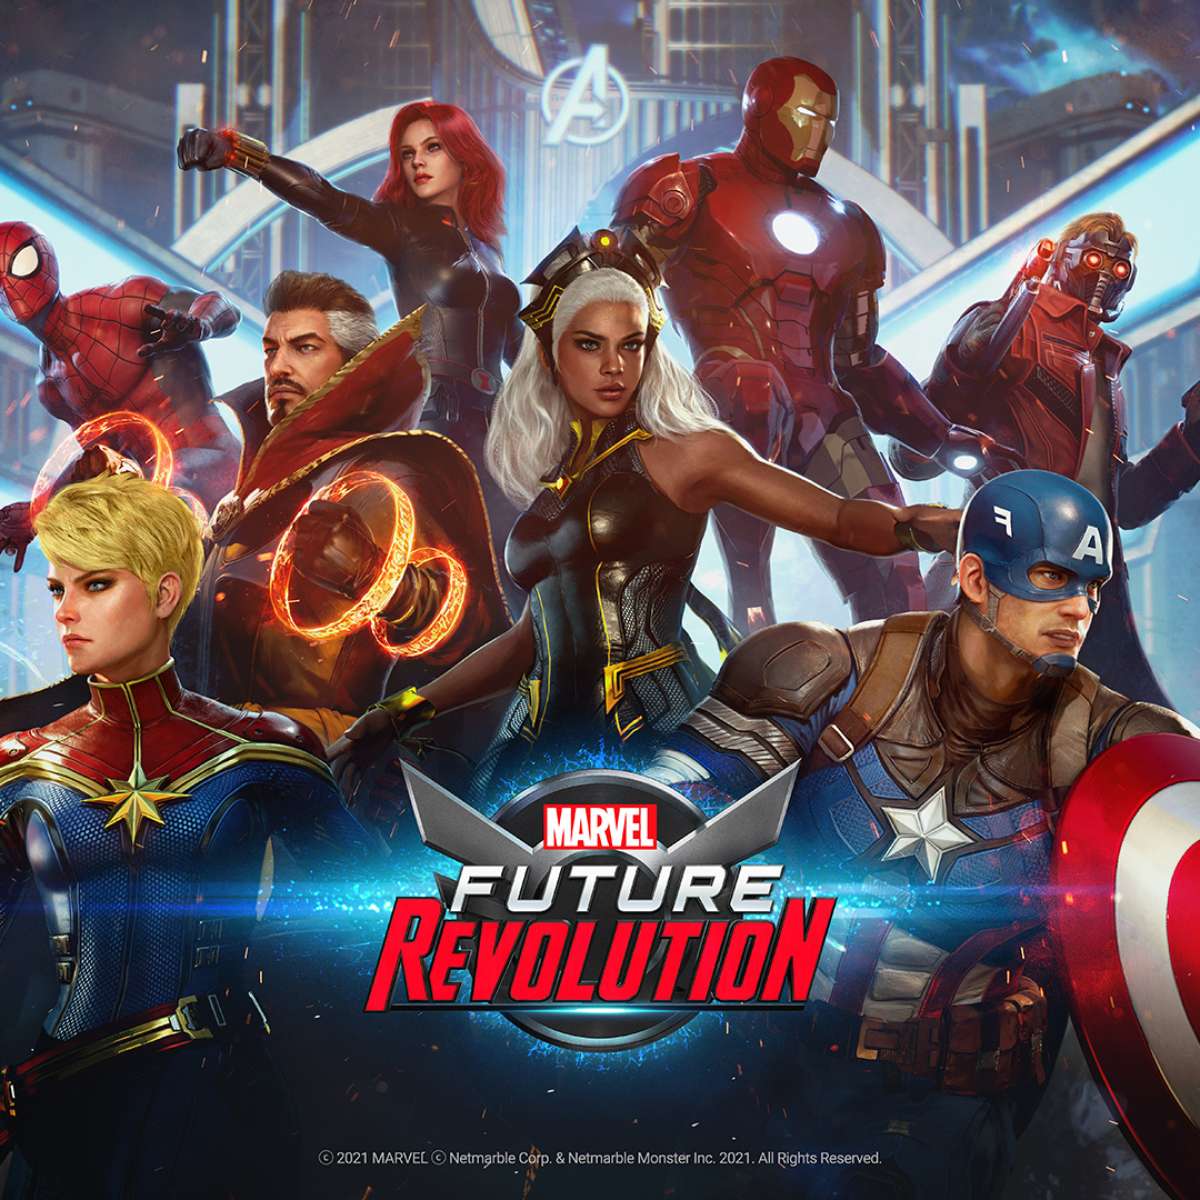 6 jogos com heróis da Marvel para celular